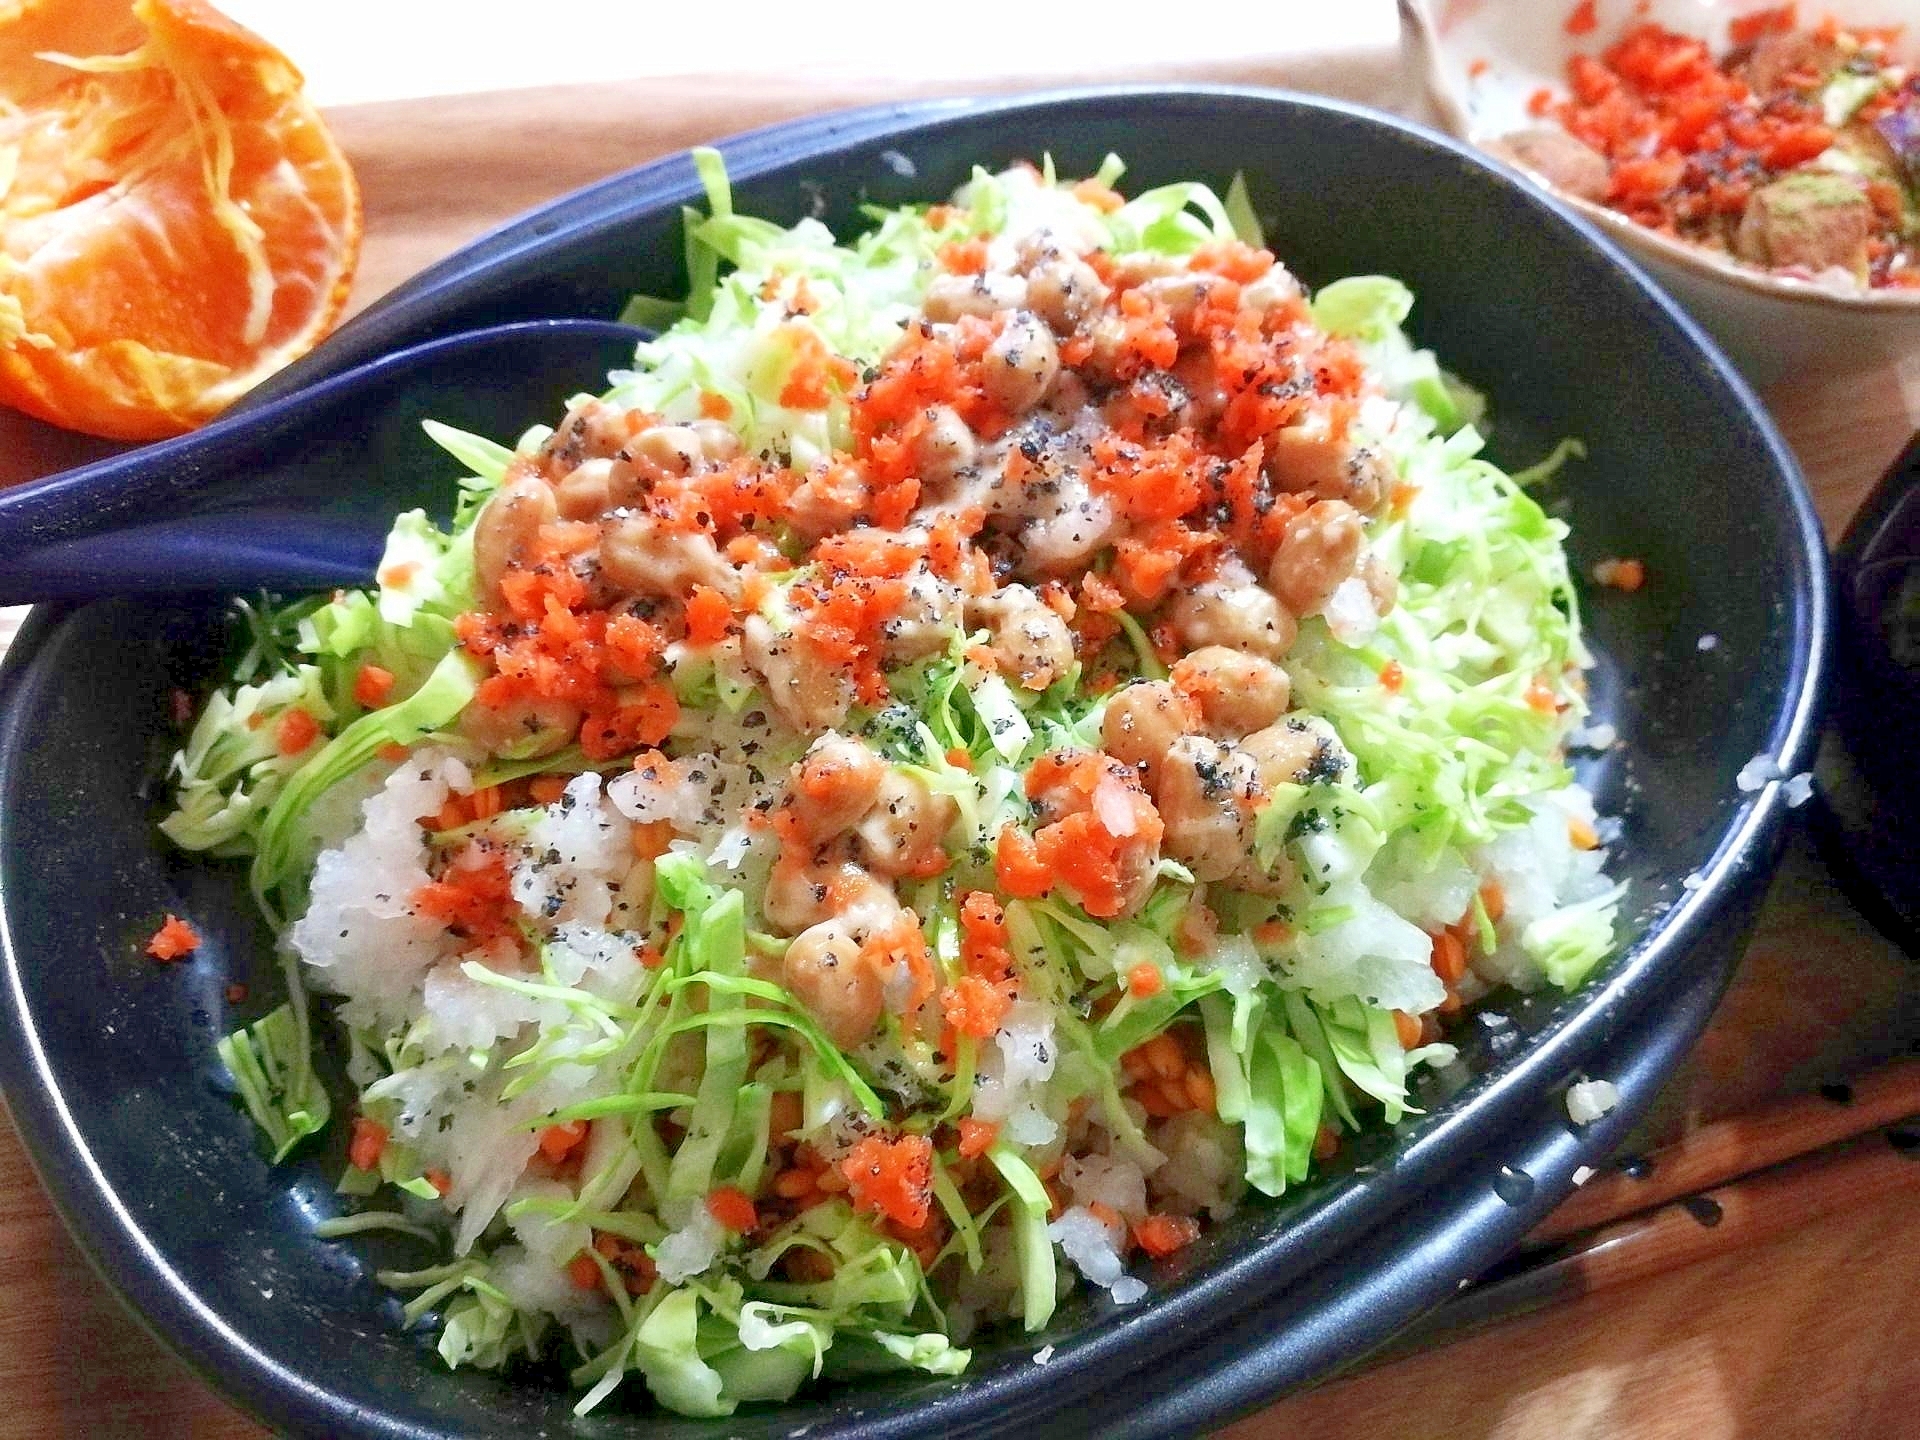 楽ウマ&栄養●納豆×キャベツ塩ダレ丼